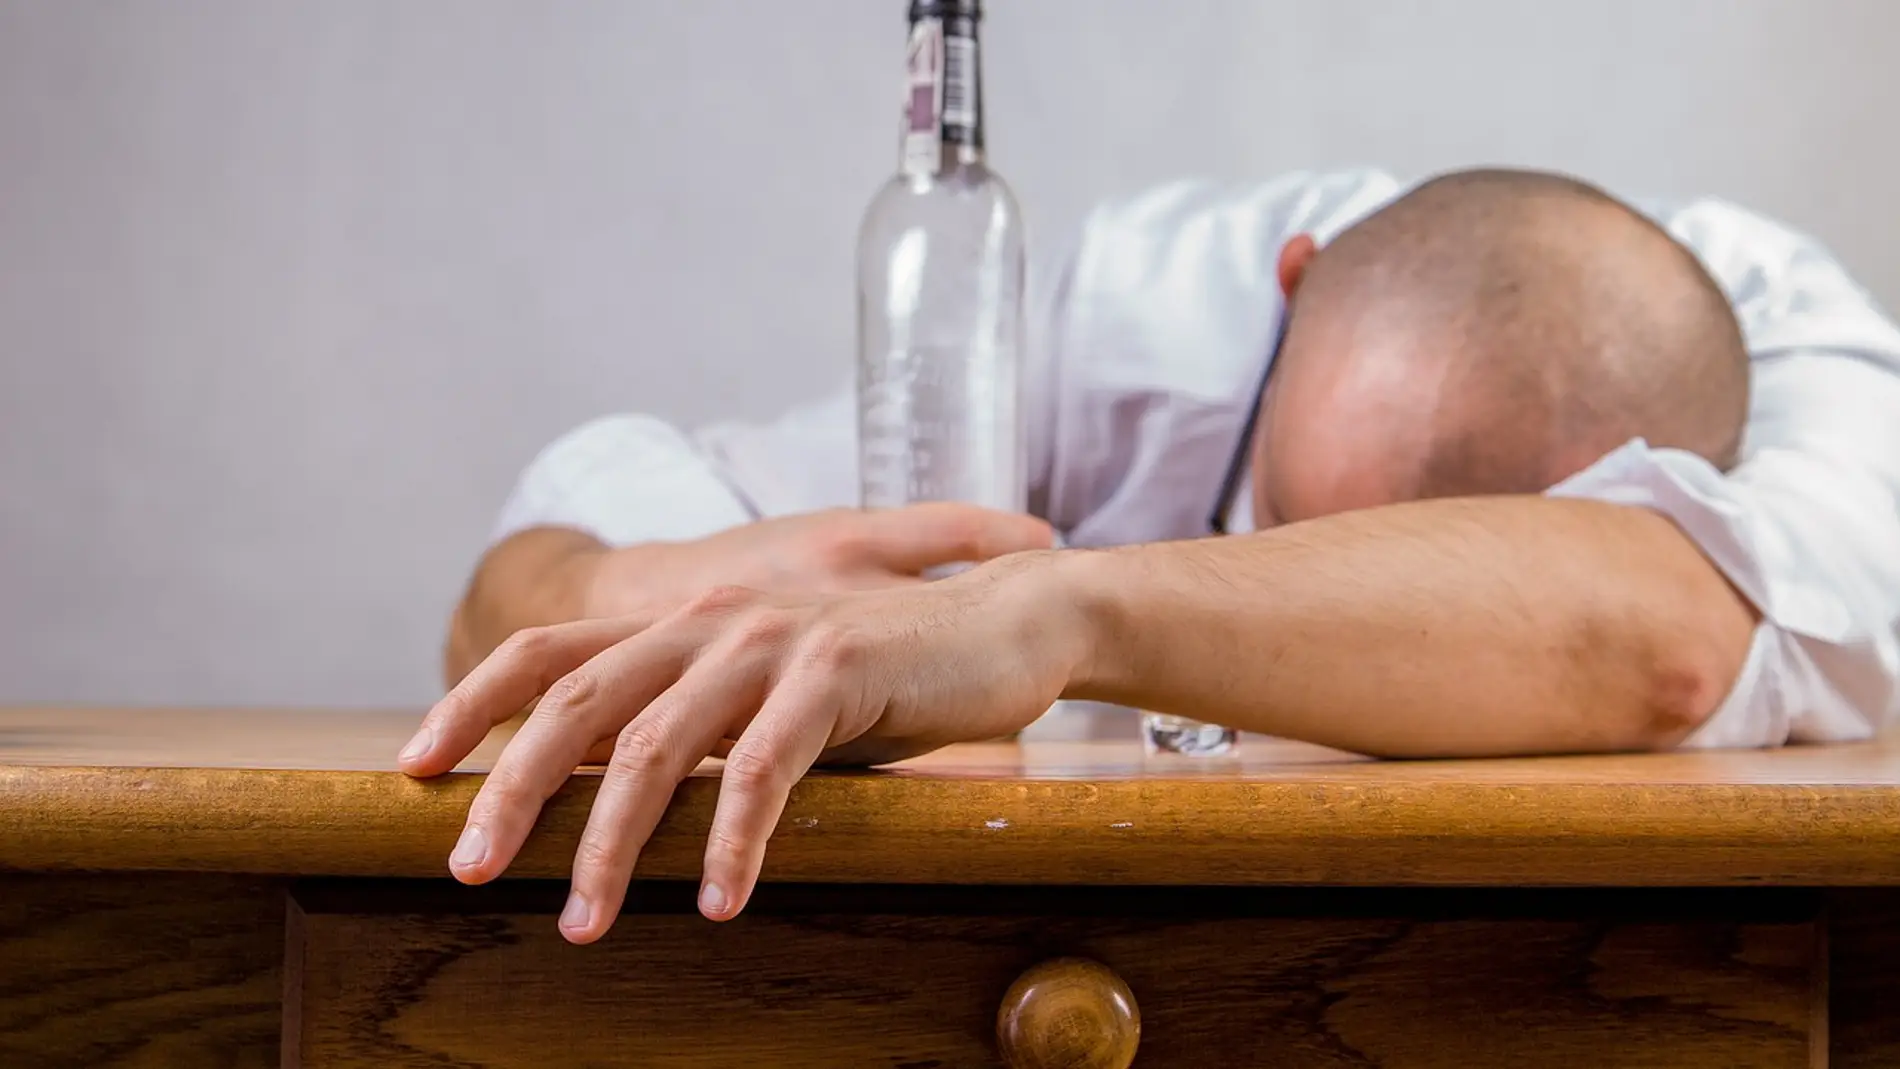 Mezclar alcohol y cocaína aumenta las posibilidades de suicidio